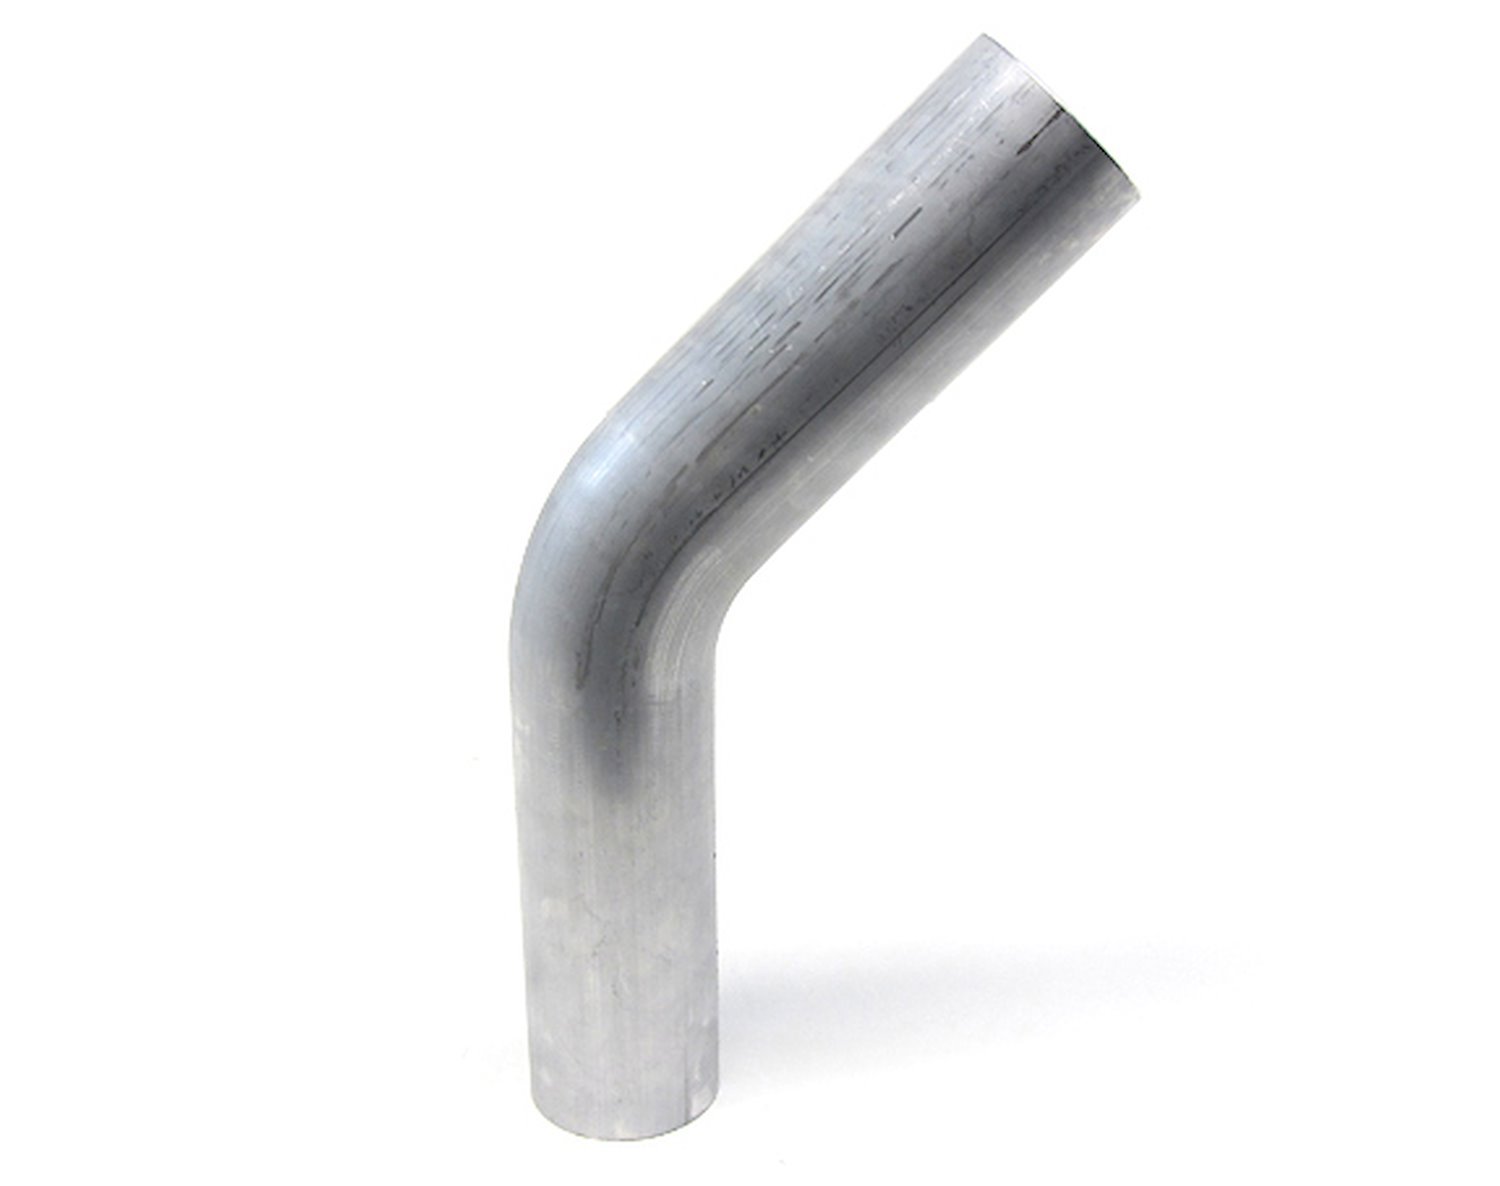 AT45-162-CLR-2 Aluminum Elbow Tube, 6061 Aluminum, 45-Degree Bend Elbow Tubing, 1-5/8 in. OD, Tight Radius, 2 in. CLR